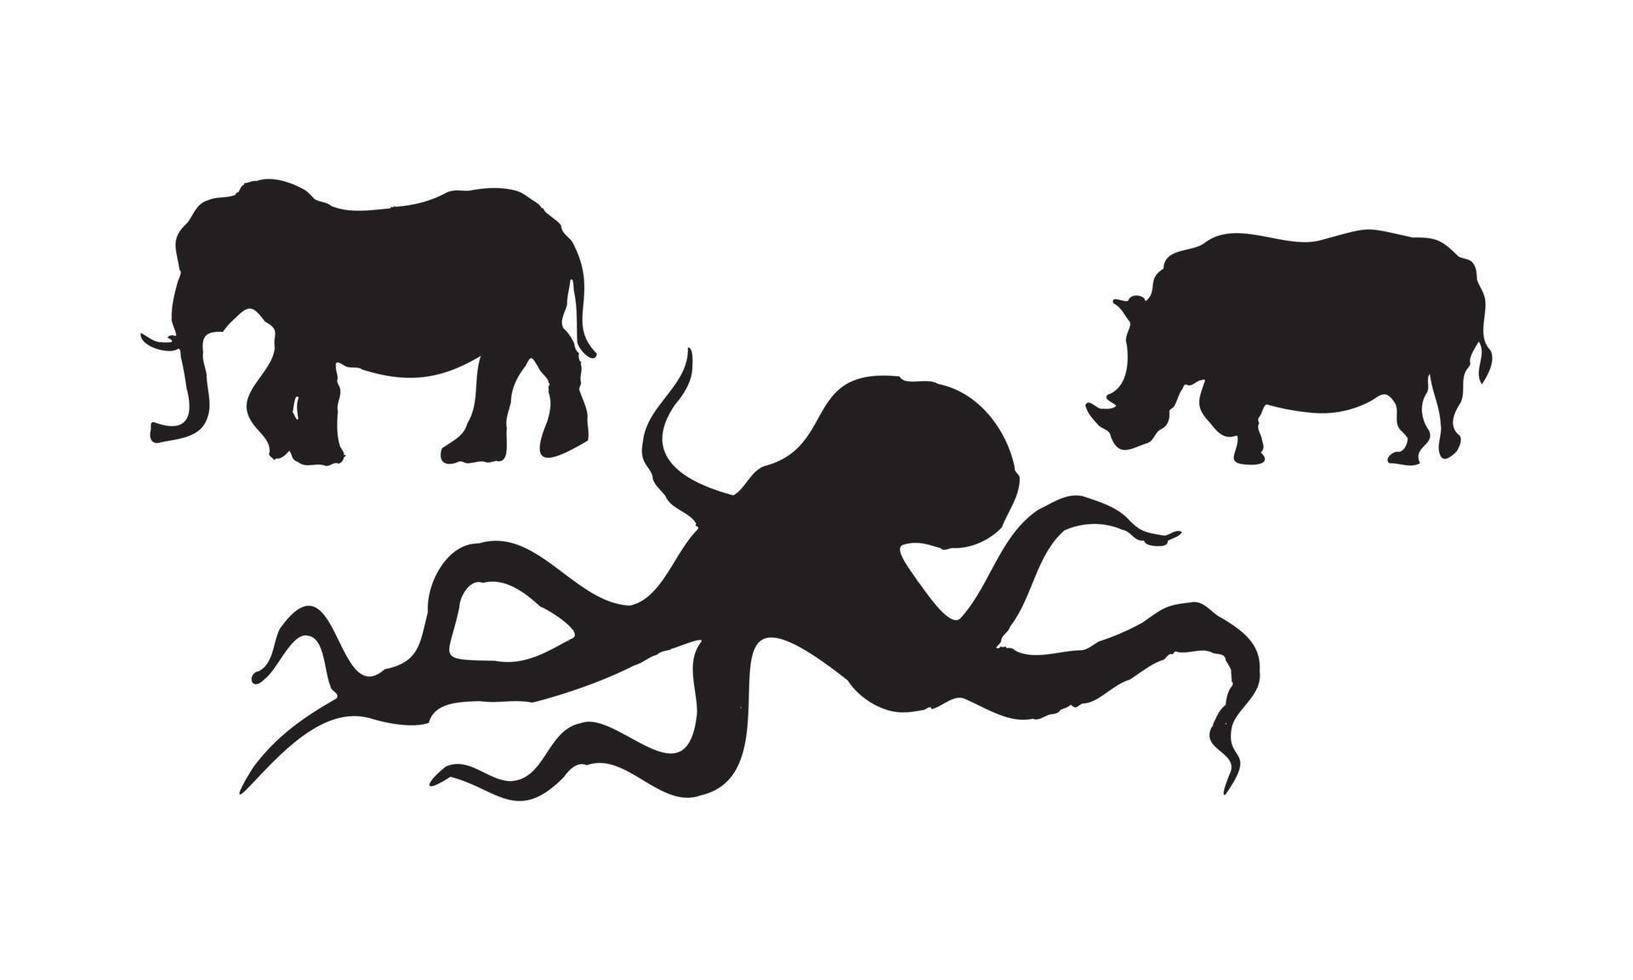 det abstrakta objektet i samtida skandinaviska stilar. silhouette bläck vektorillustrationer av varg, häst och elefant som har något prydnadsmönster på baksidan. vektor